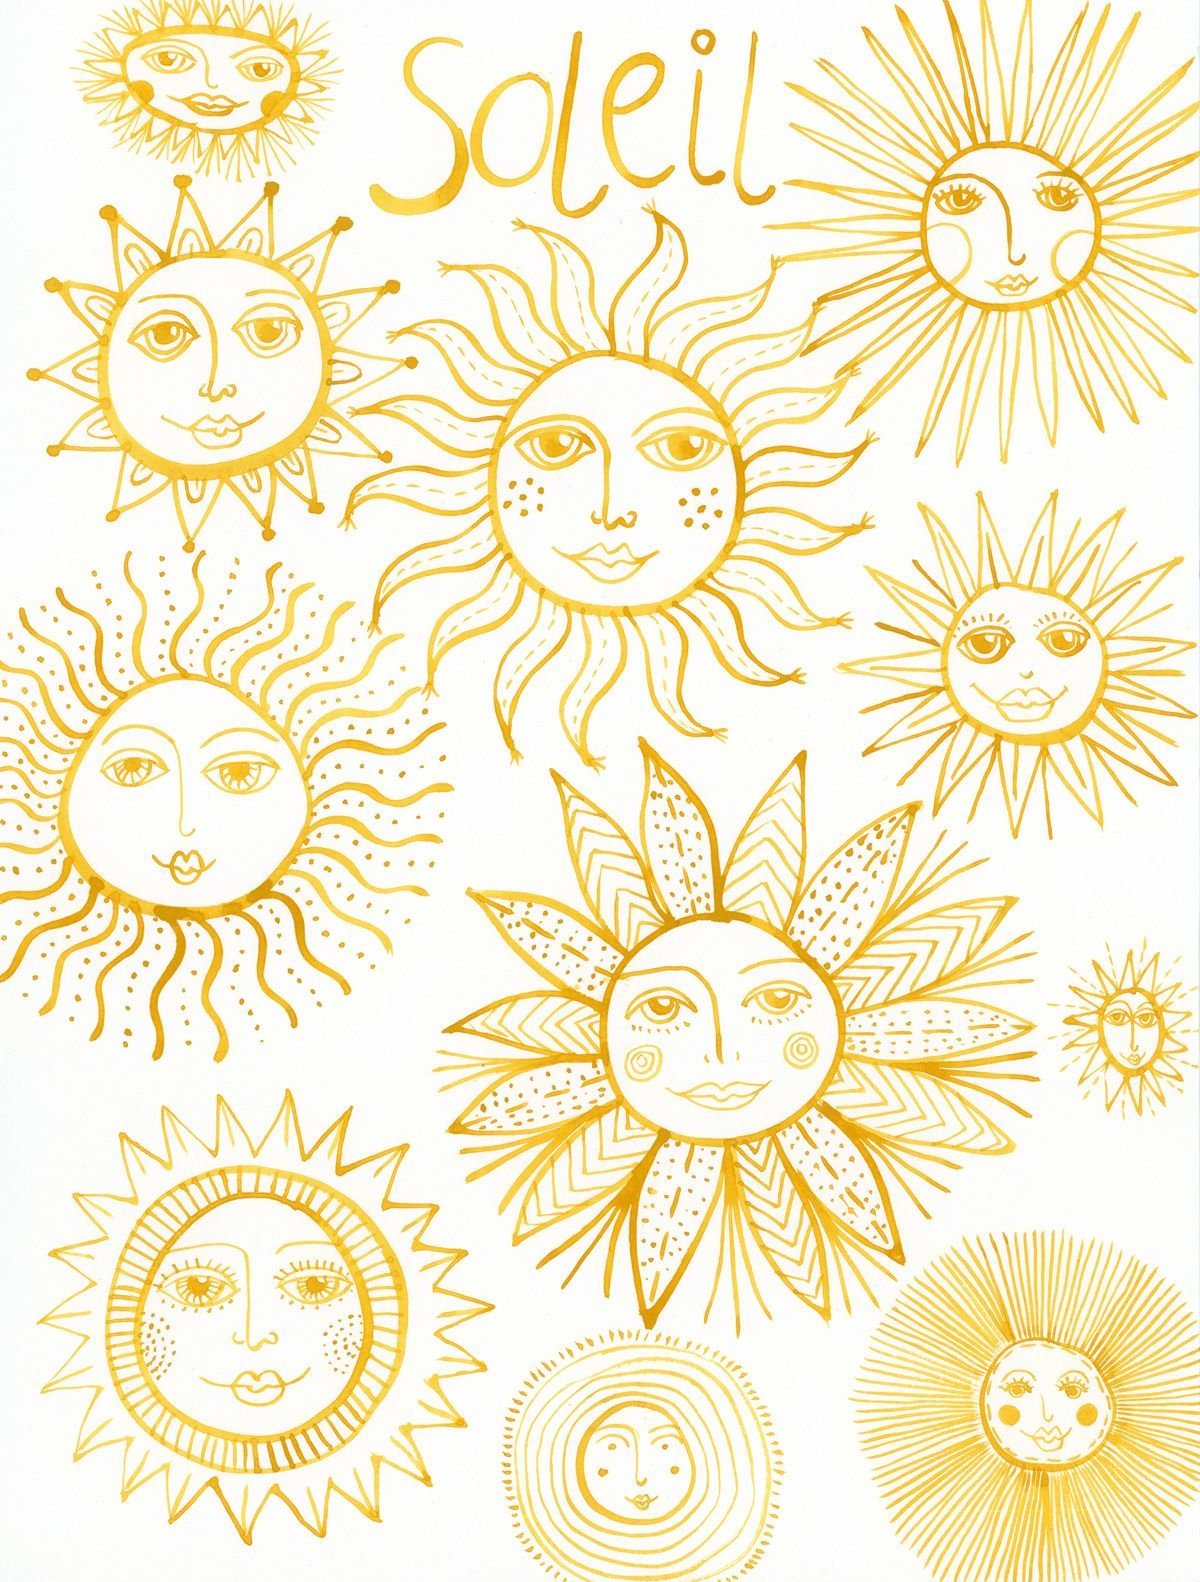 Солнце изображение рисунок. Солнце рисунок. Солнце риконок. Стилизованное изображение солнца. Орнамент солнце.